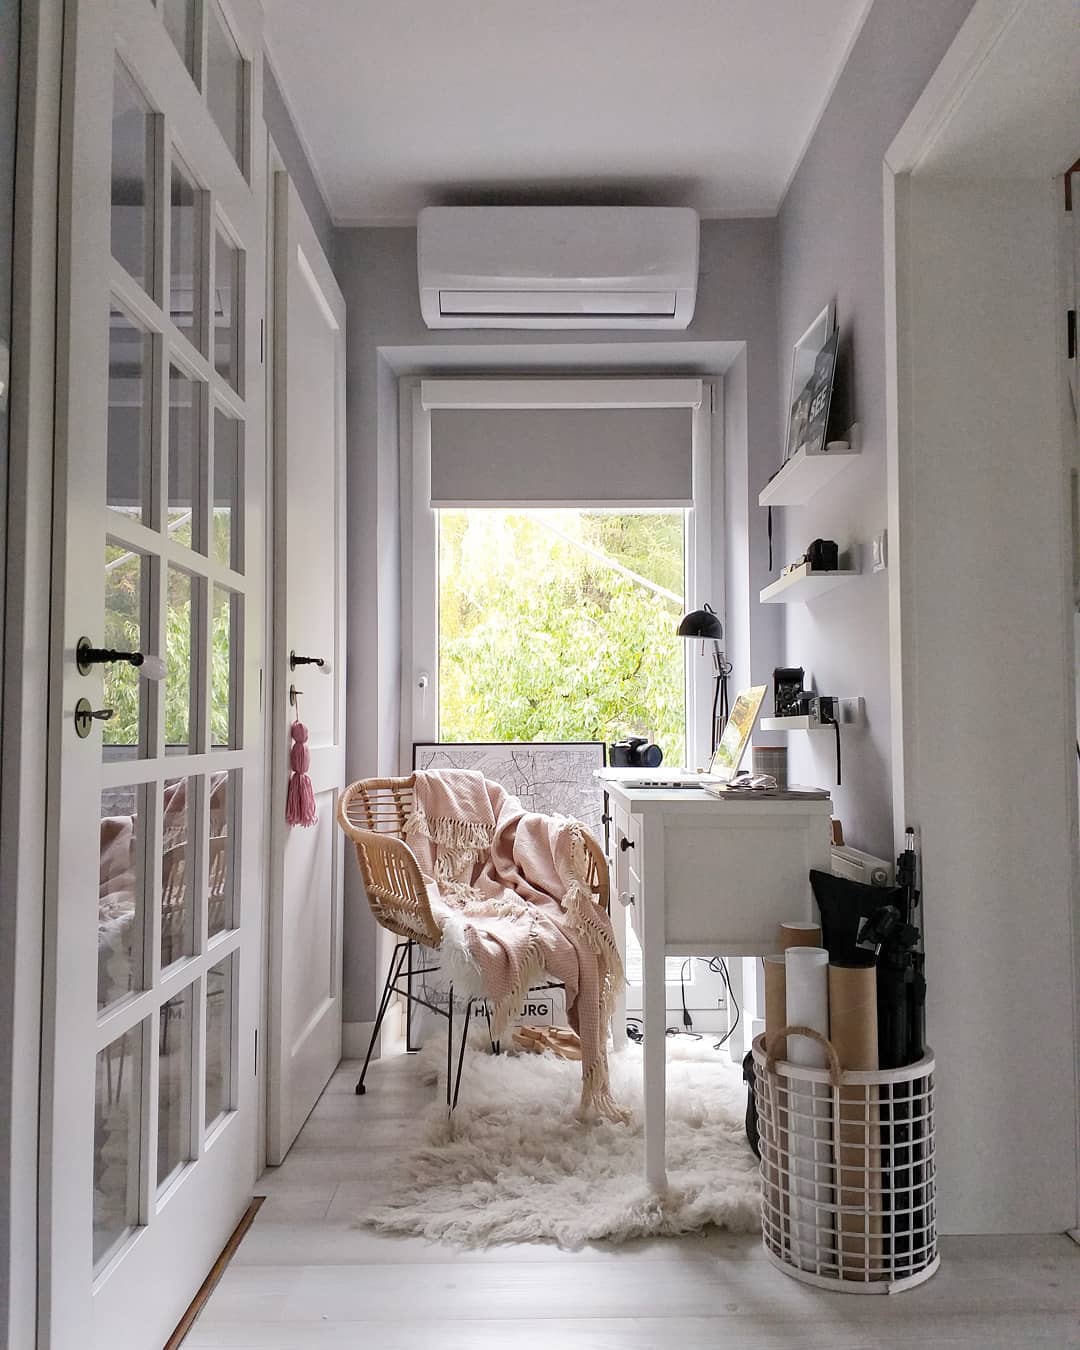 Home office set up in flex space. Photo by Instagram user @odinspiracjidorealizacji